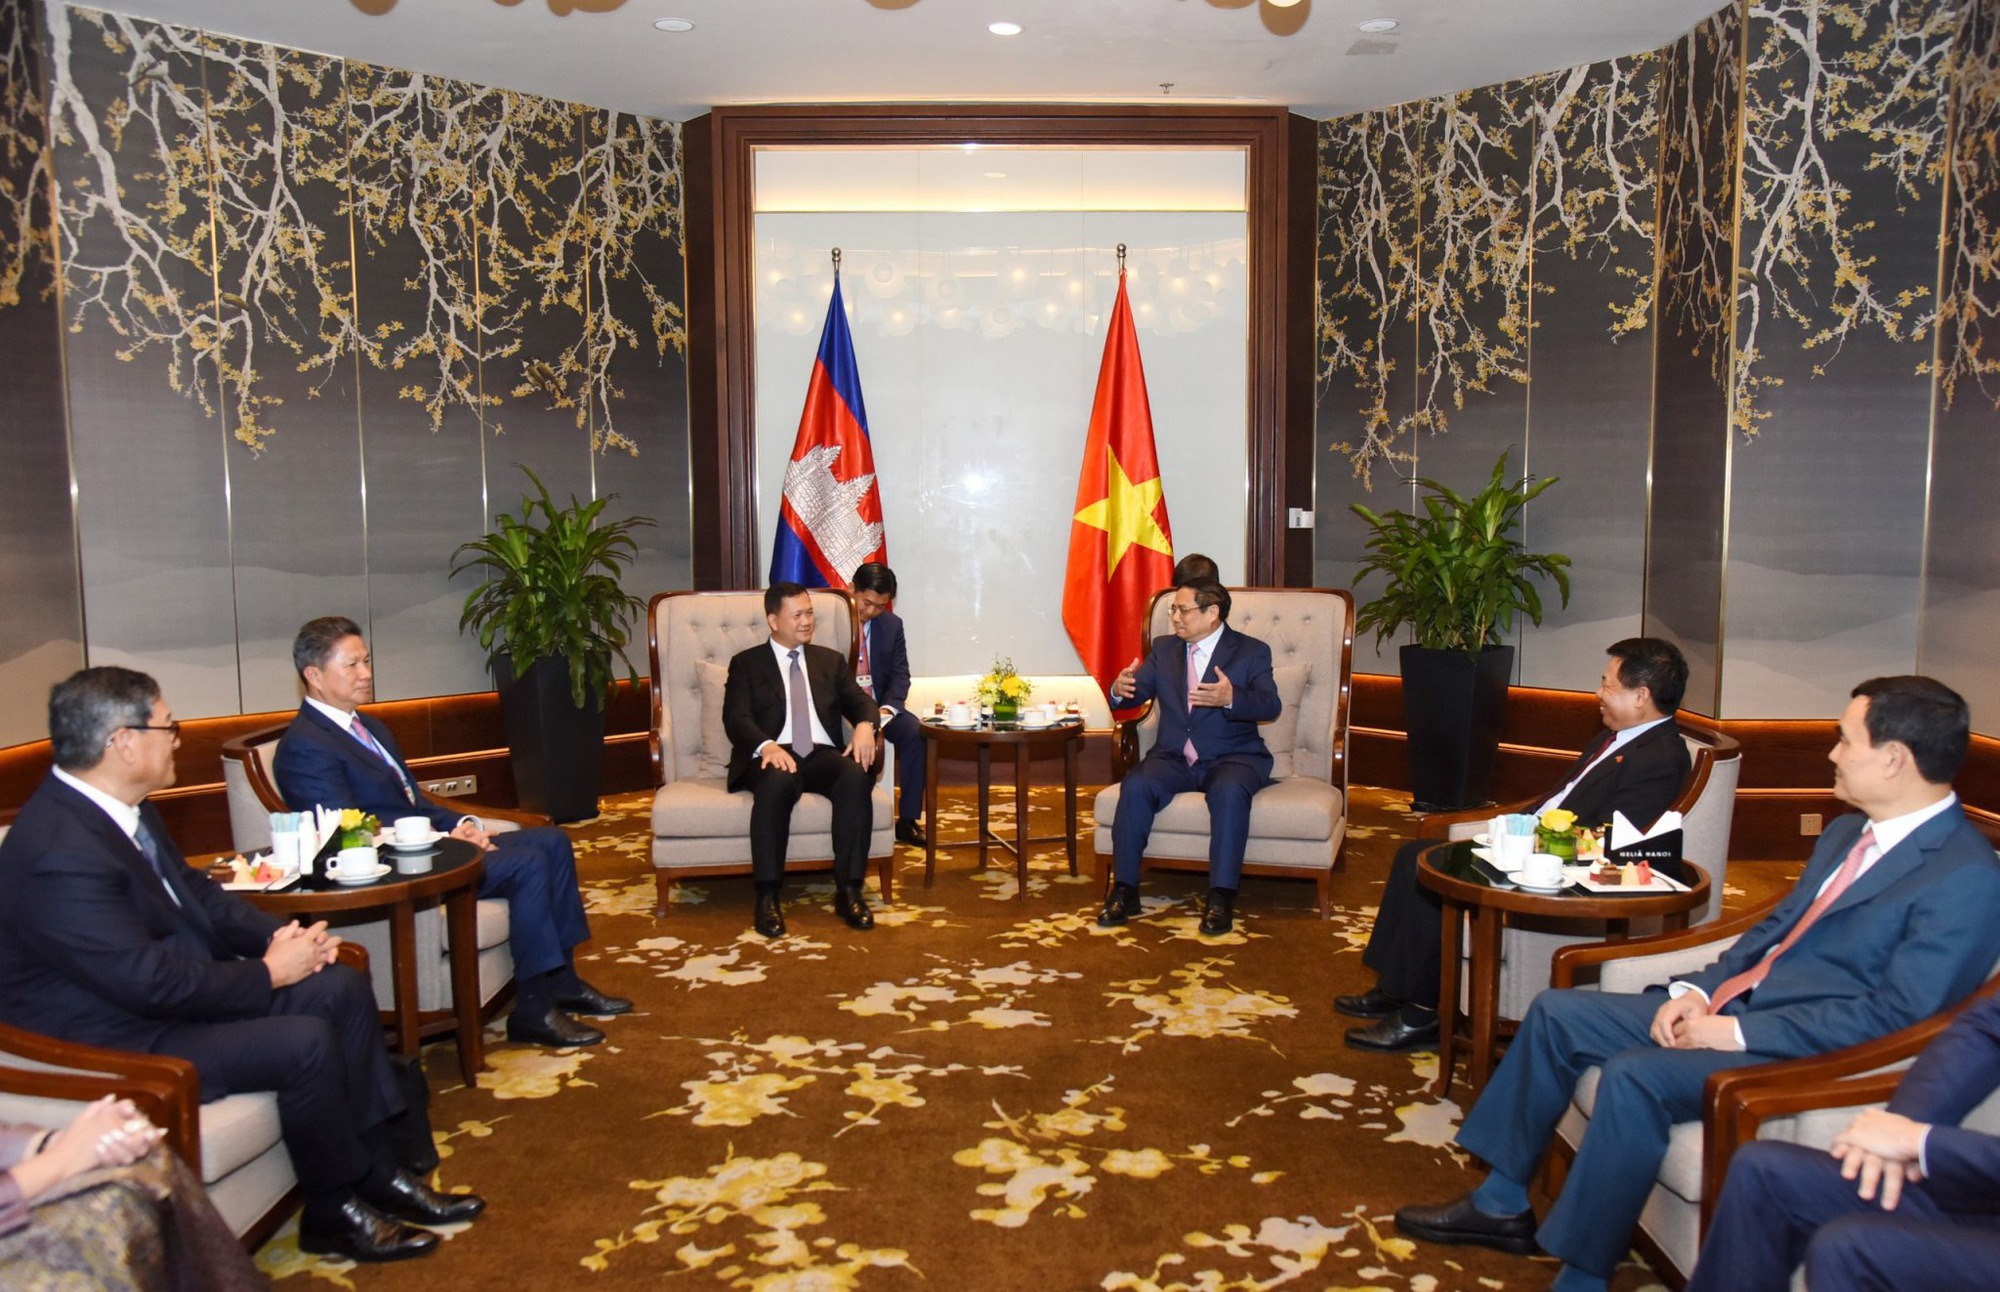 Thủ tướng Phạm Minh Chính tặng Thủ tướng Campuchia sách của Tổng Bí thư Nguyễn Phú Trọng- Ảnh 4.